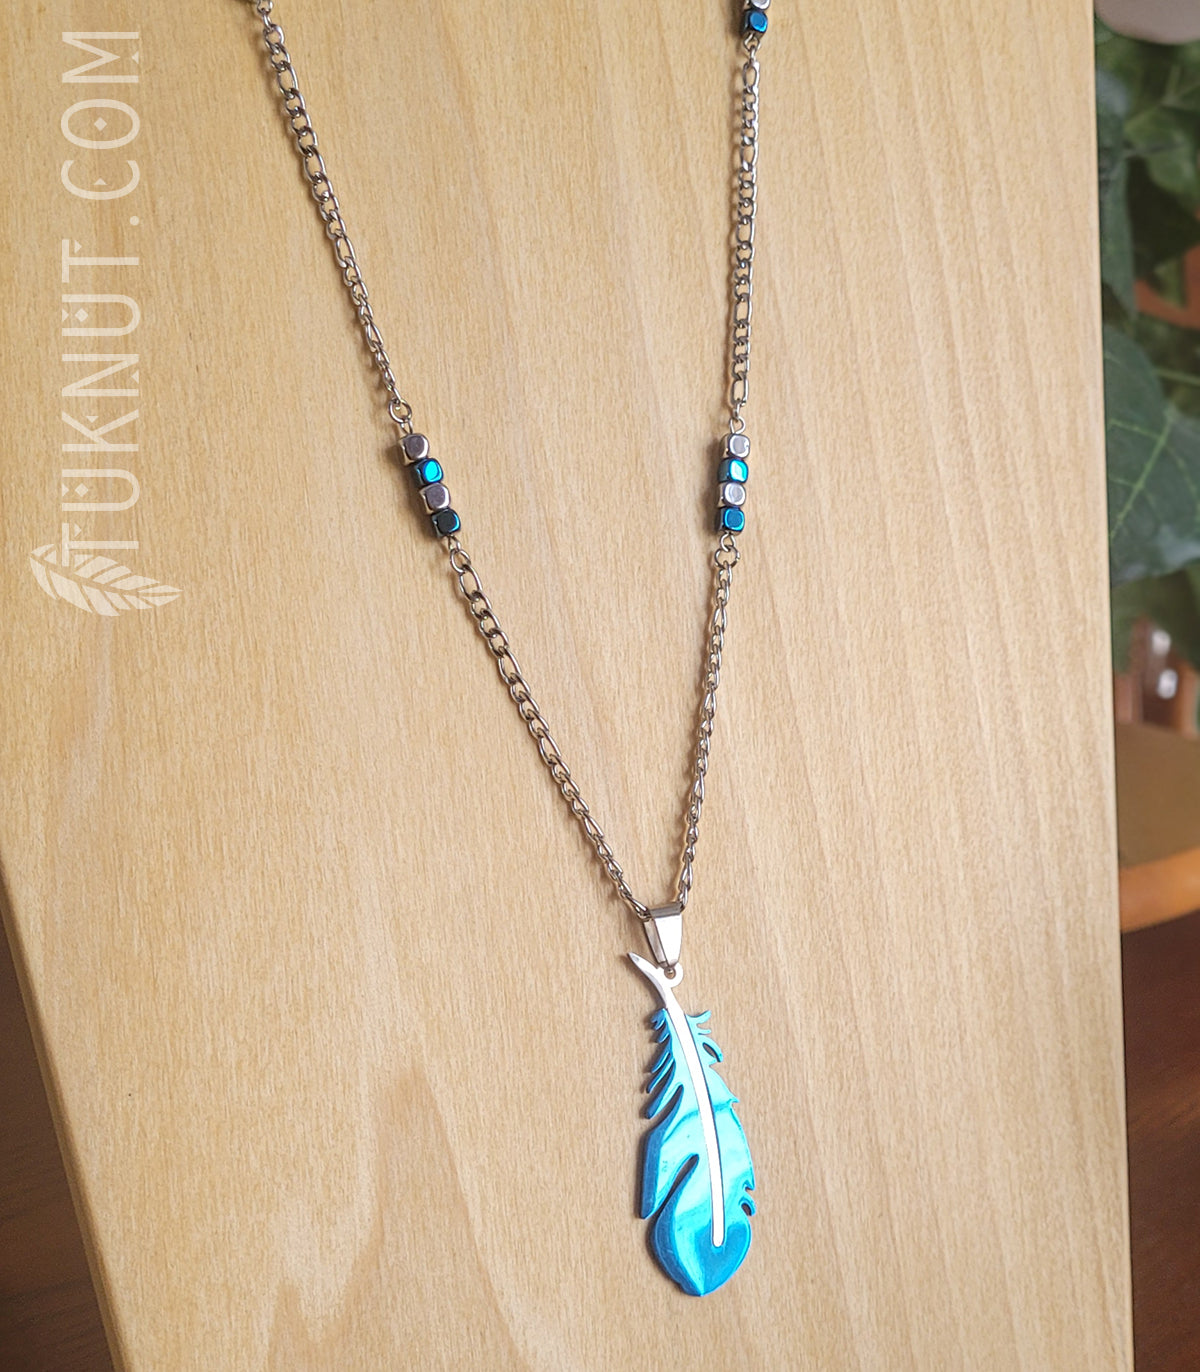 Collier d'inspiration autochtone en acier inoxydable avec pendentif (plume bleue et argent) et hématite (couleurs : argent et bleu) TUKNUT